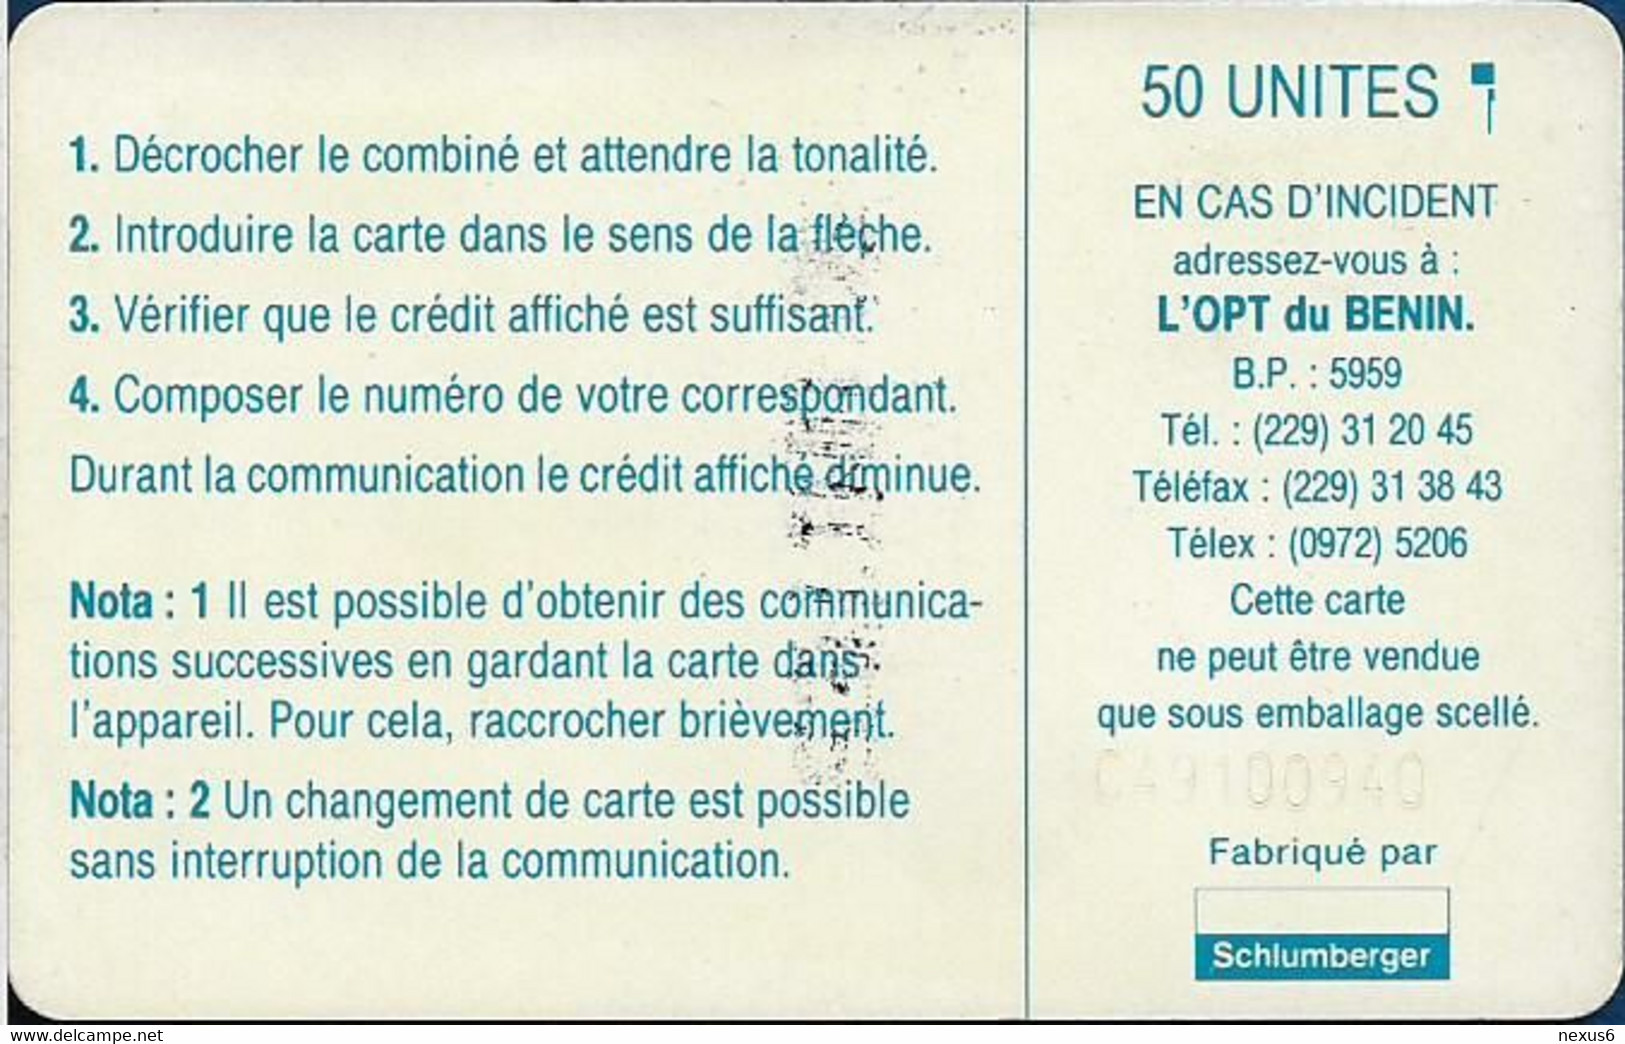 Benin - PTT (Chip) - Logo 50, Chip SC5 Afnor, Cn. C49100940 White, 50Units, Used - Benin